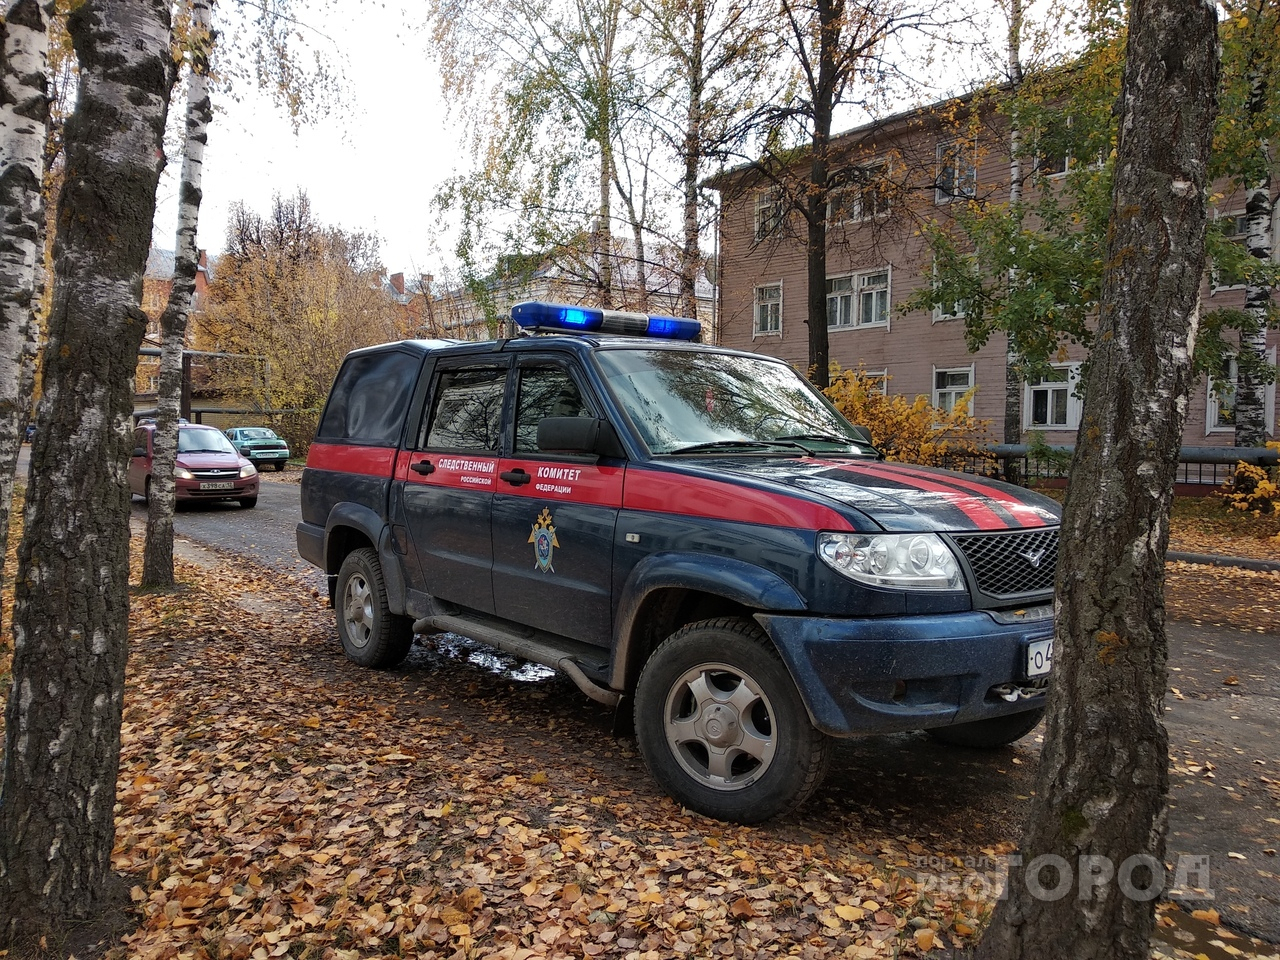 Следователи провели обыск у родного брата экс-мэра Йошкар-Олы Плотникова